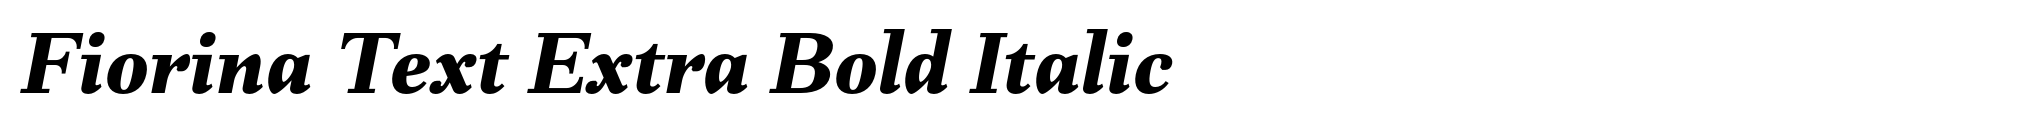 Fiorina Text Extra Bold Italic image